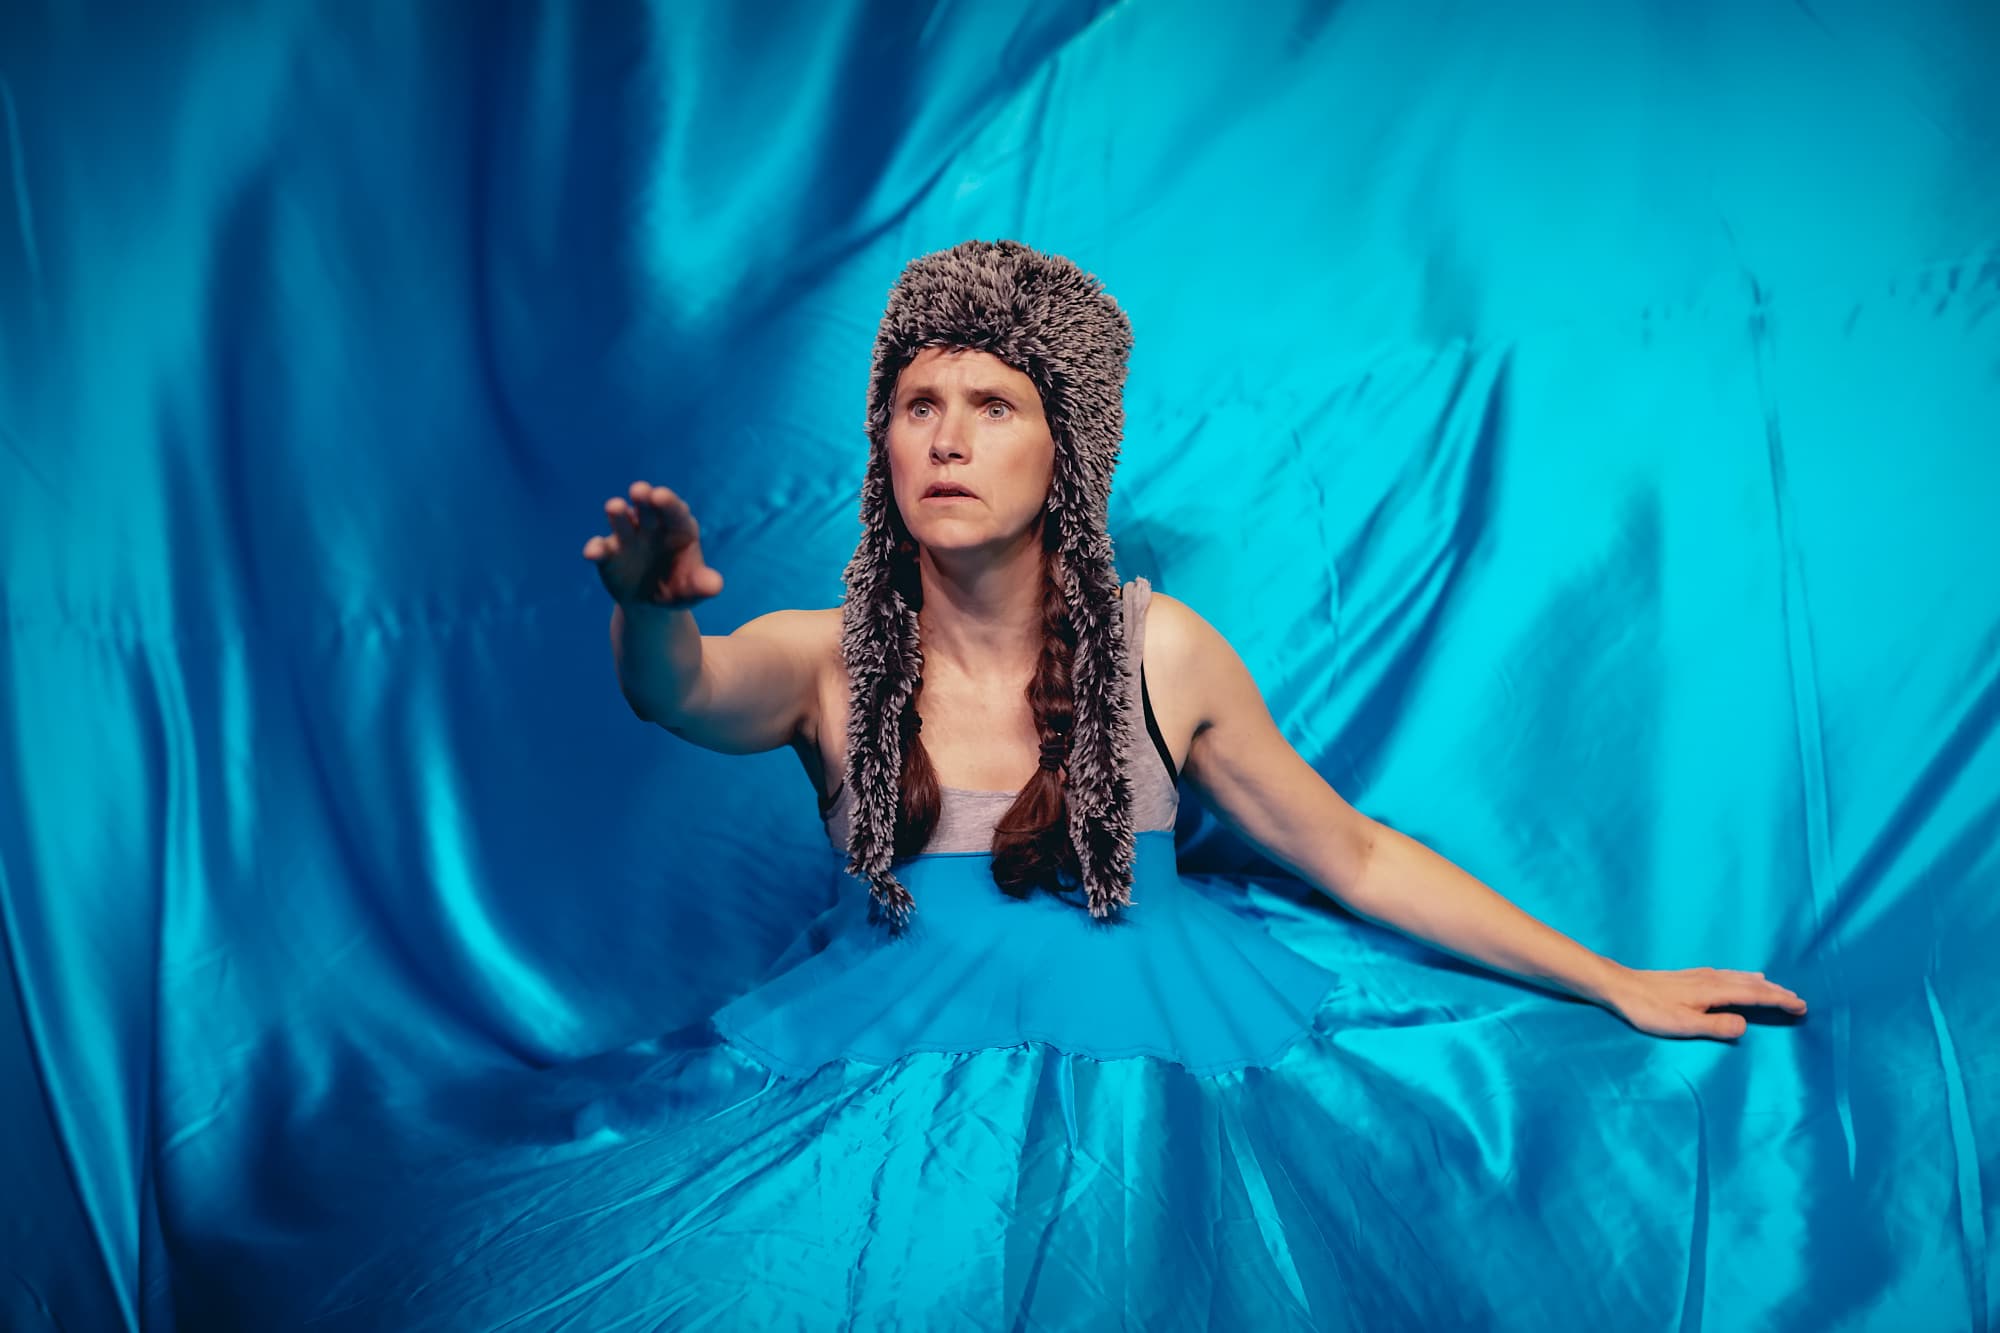 Fotografi: Bildet viser en kvinnelig skuespiller med pelslue ikledd en blå kjole med et slør som omfavner hele bildet.